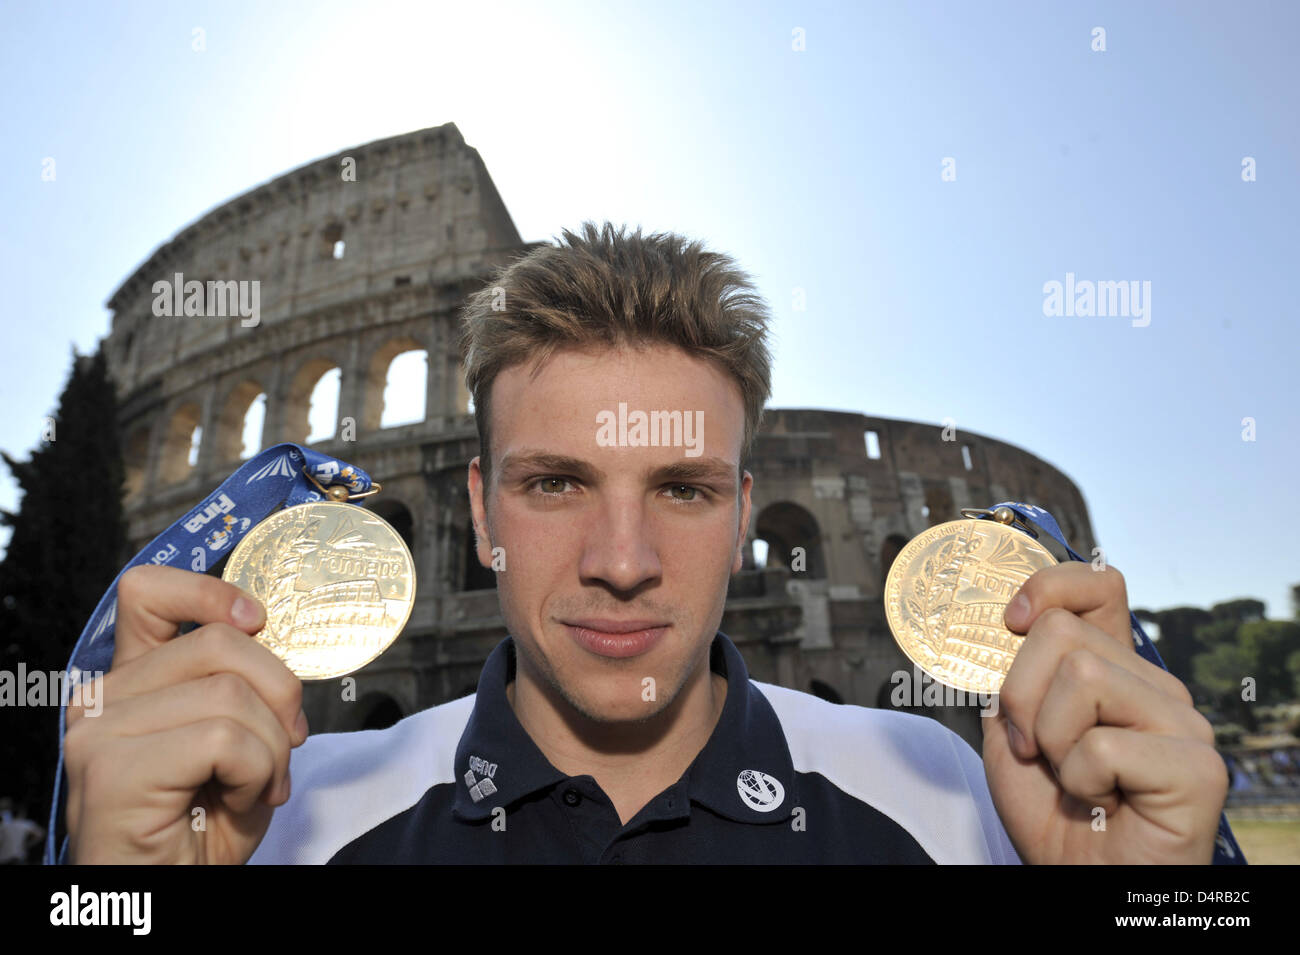 Nuotatore tedesco Paul Biedermann, il duplice campione del mondo, mostra il suo oro medaglie per le vittorie nel 200m e 400m Freestyle gare nei Campionati del Mondo di nuoto FINA di fronte al Colosseo a Roma, Italia, 30 luglio 2009. Foto: Bernd Thissen Foto Stock